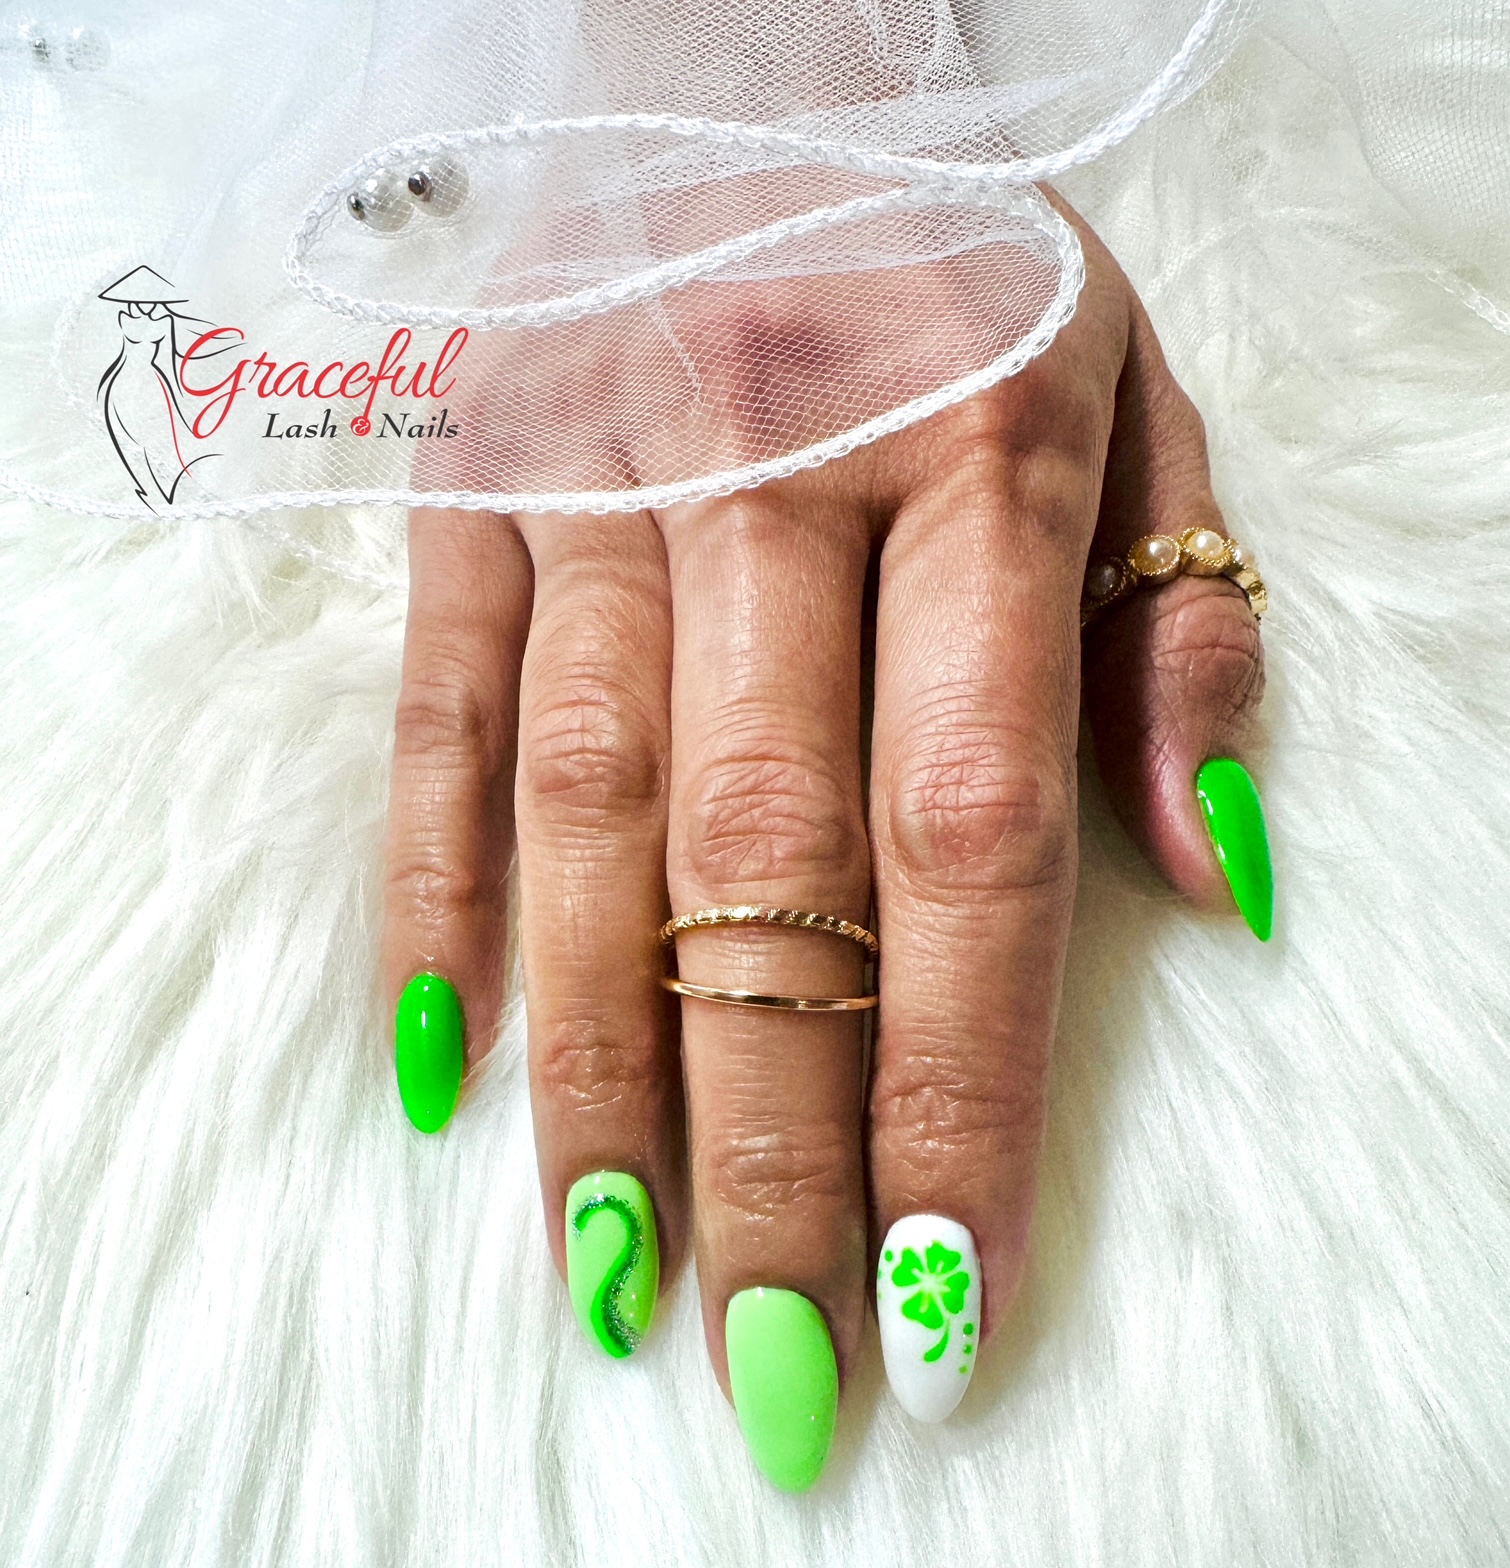 Graceful Lash & Nails